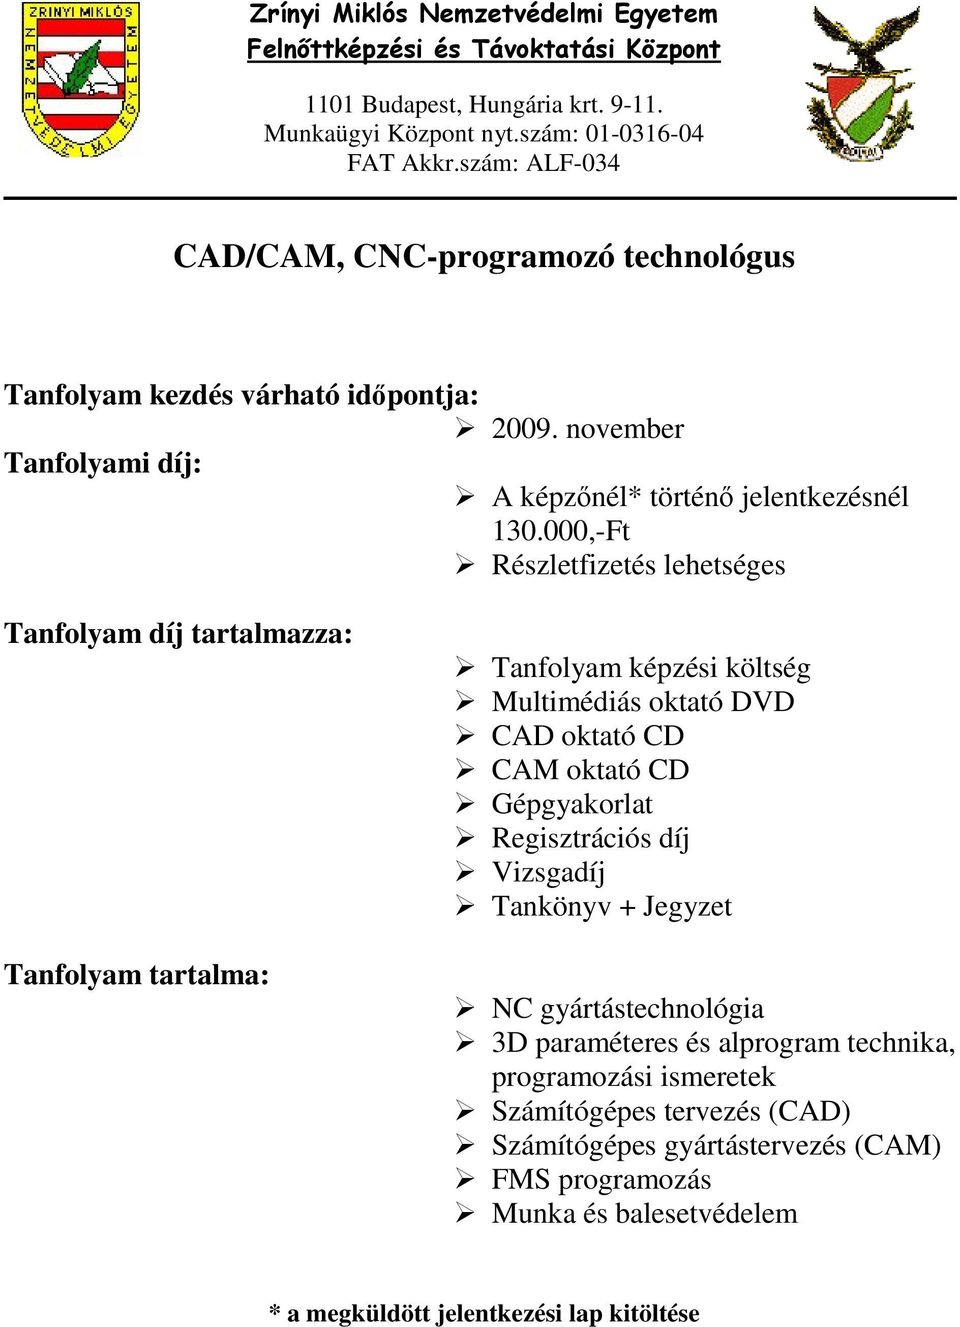 CAD/CAM, CNC-programozó technológus - PDF Ingyenes letöltés